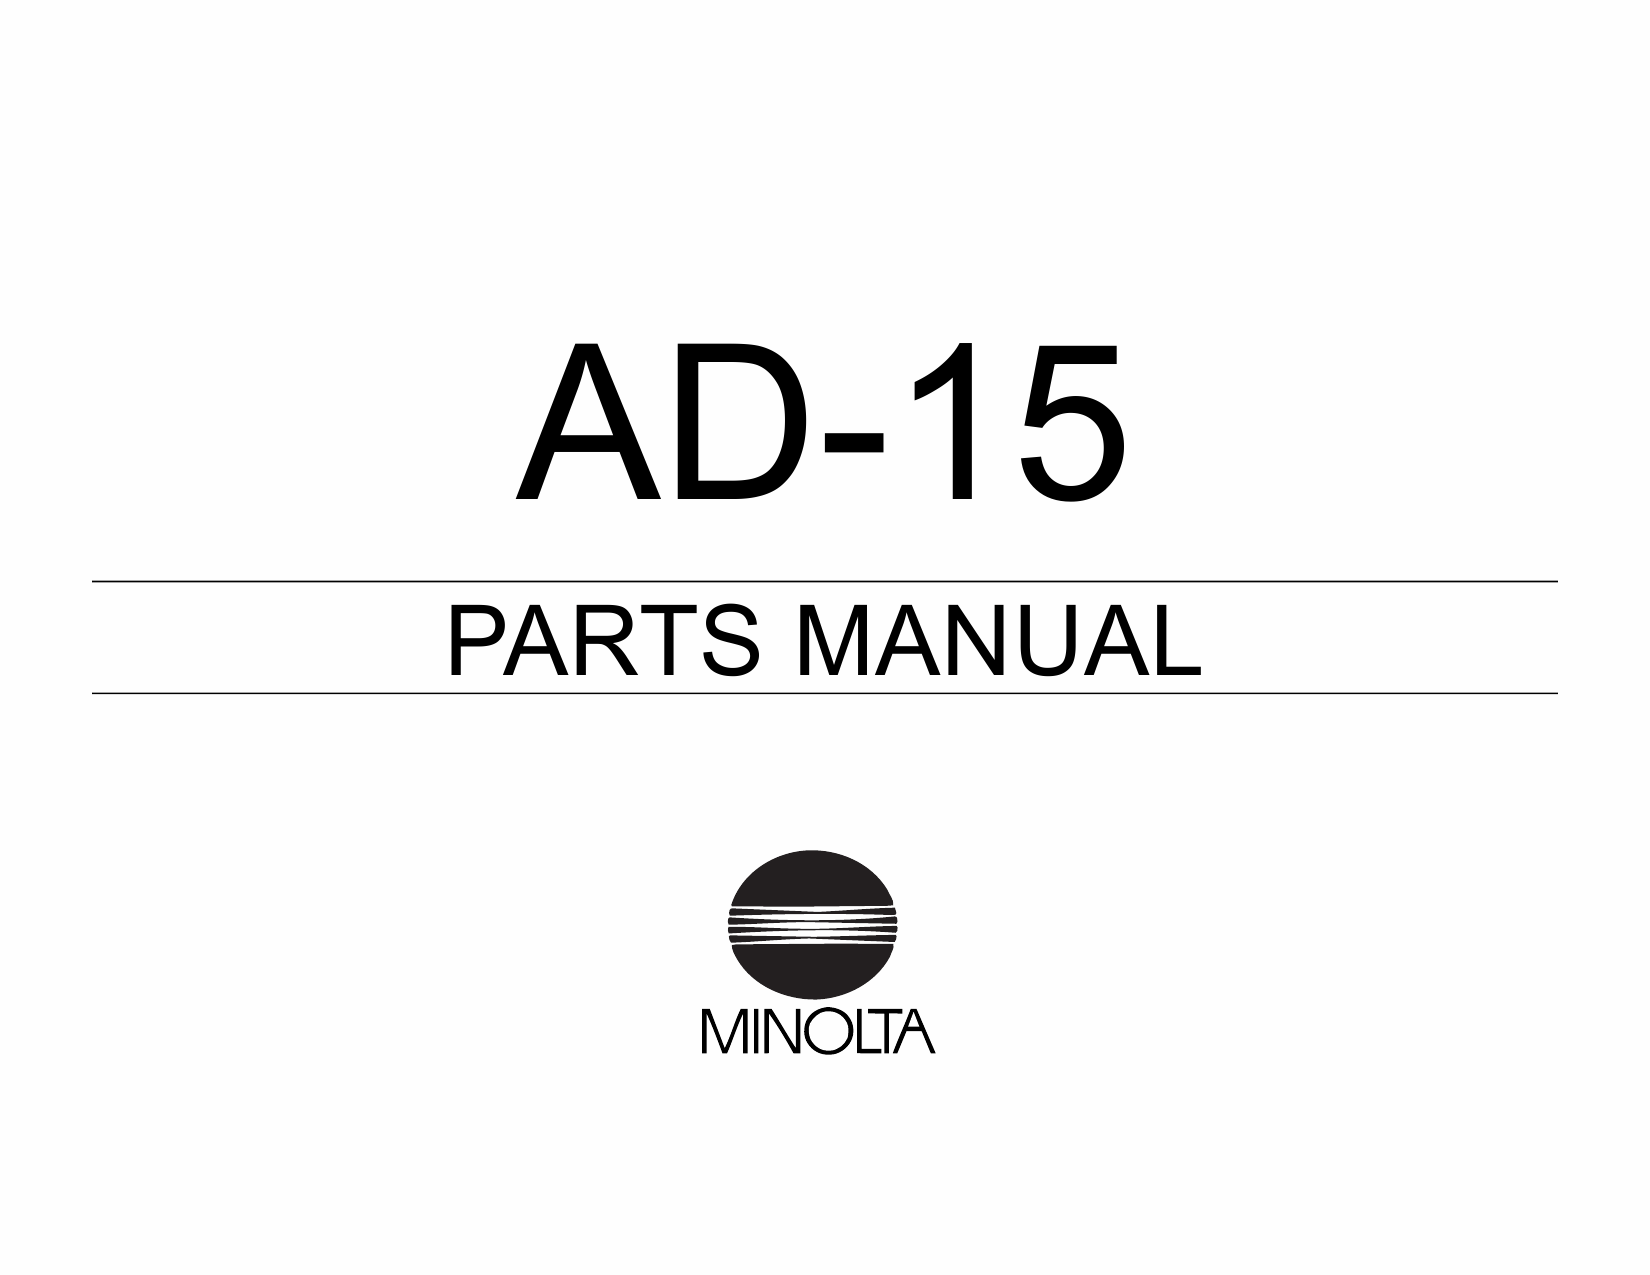 Konica-Minolta Options AD-15 Parts Manual-1